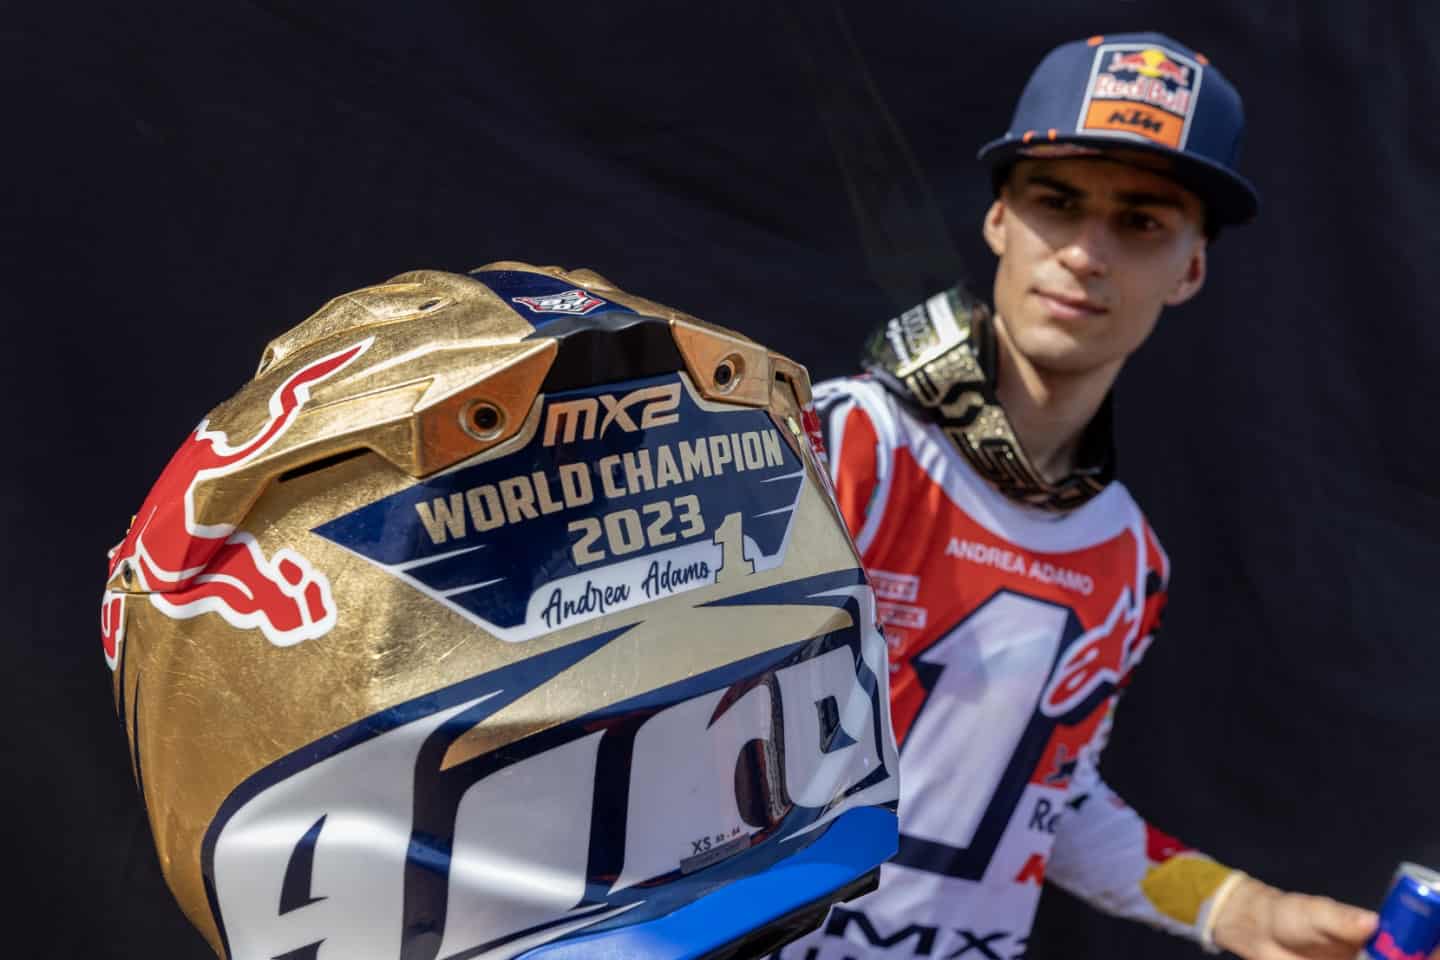 FIM Motocross-Weltmeisterschaft 2023 in Maggiora - Fahrerstimmen